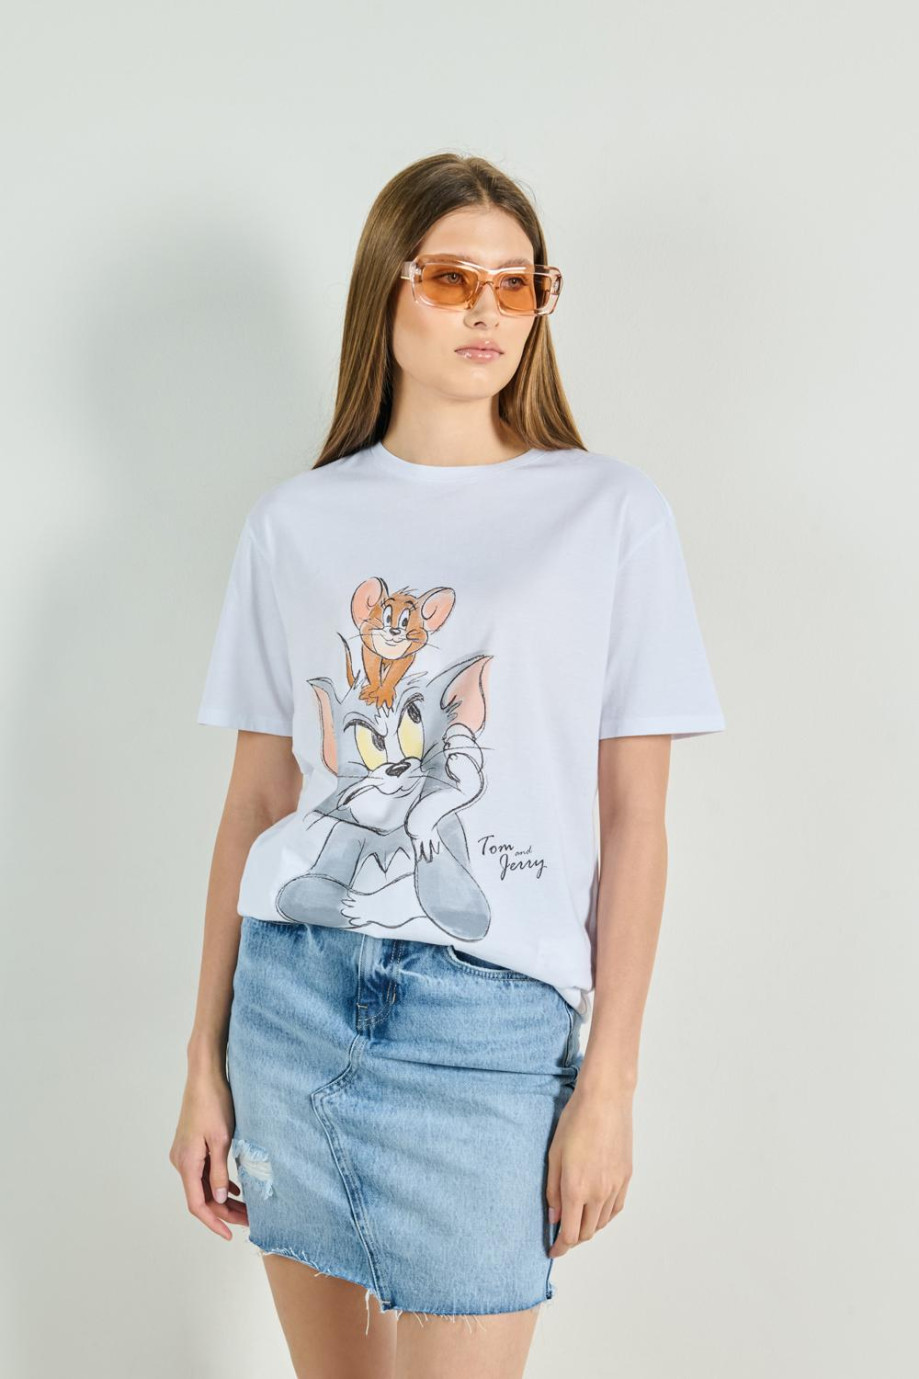 Camiseta blanca con diseño de Tom y Jerry y manga corta